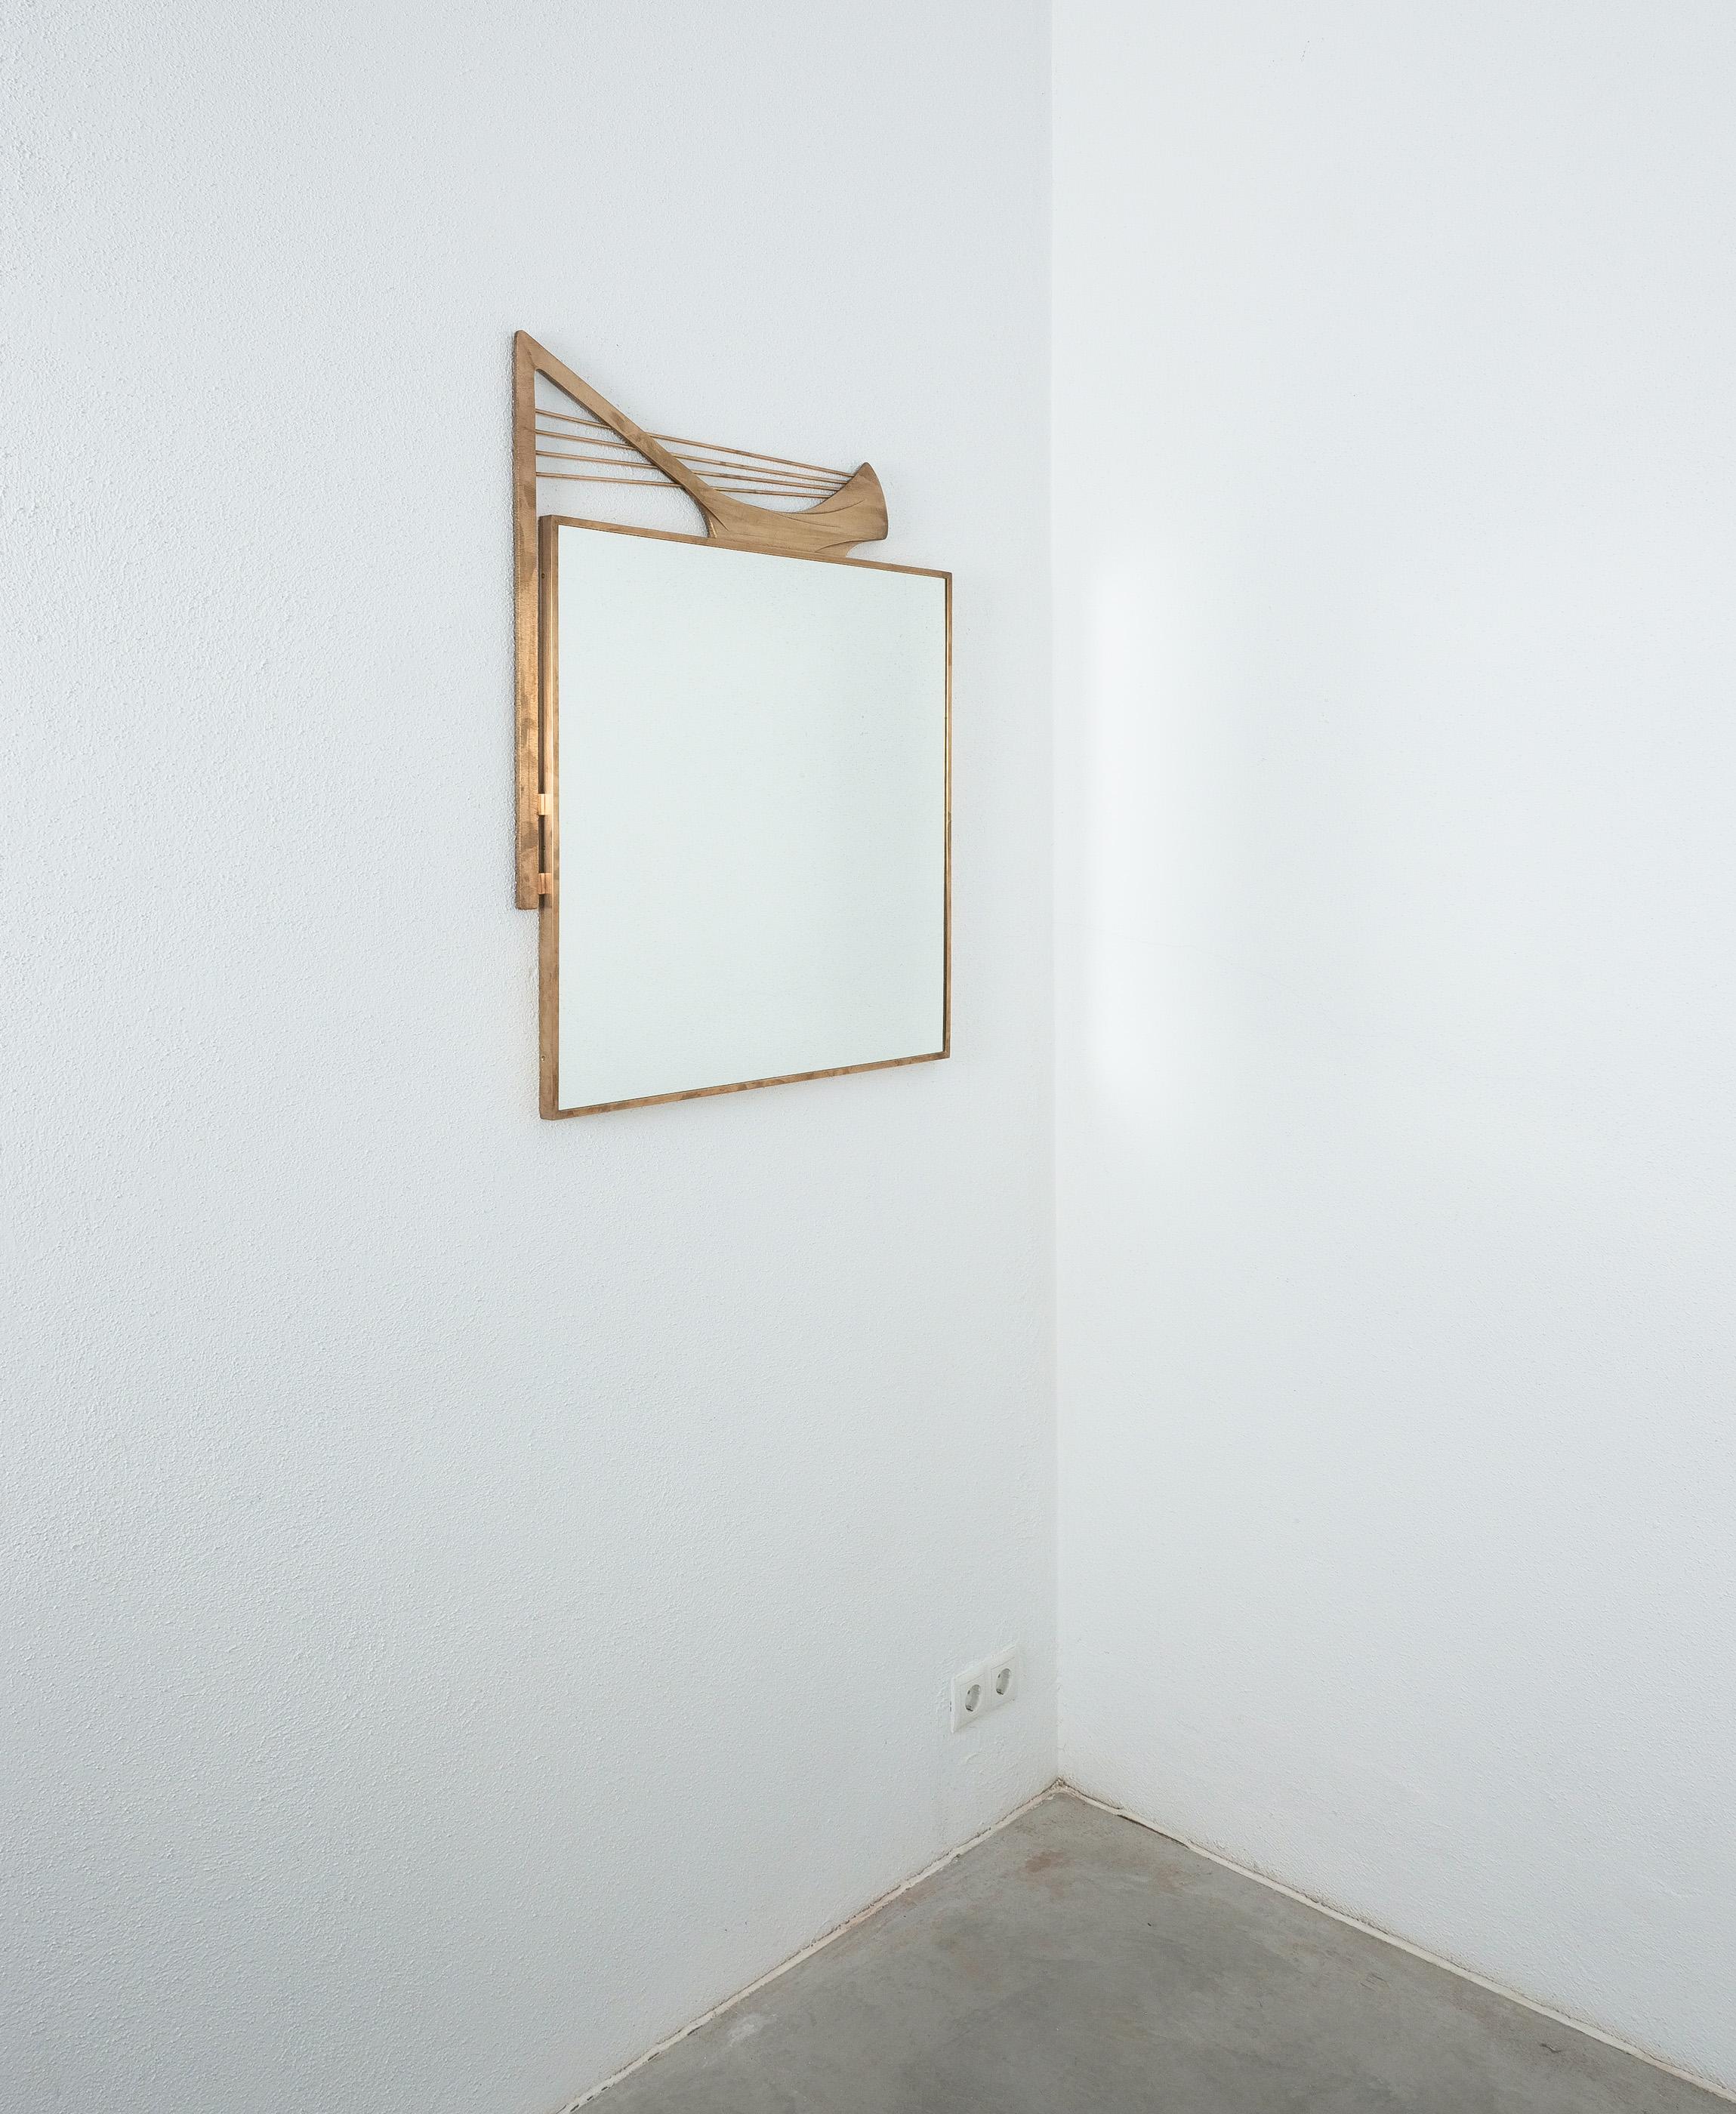 Wandspiegel mit Messingrahmen, Italien, 1955

Dynamisch komponierter Spiegel mit Messingrahmen aus den 1950er Jahren, der an den Stil von Karl Hagenauer erinnert. Sehr dekorativer Wandspiegel mit Messingornamenten, die auf abstrakte Weise an ein